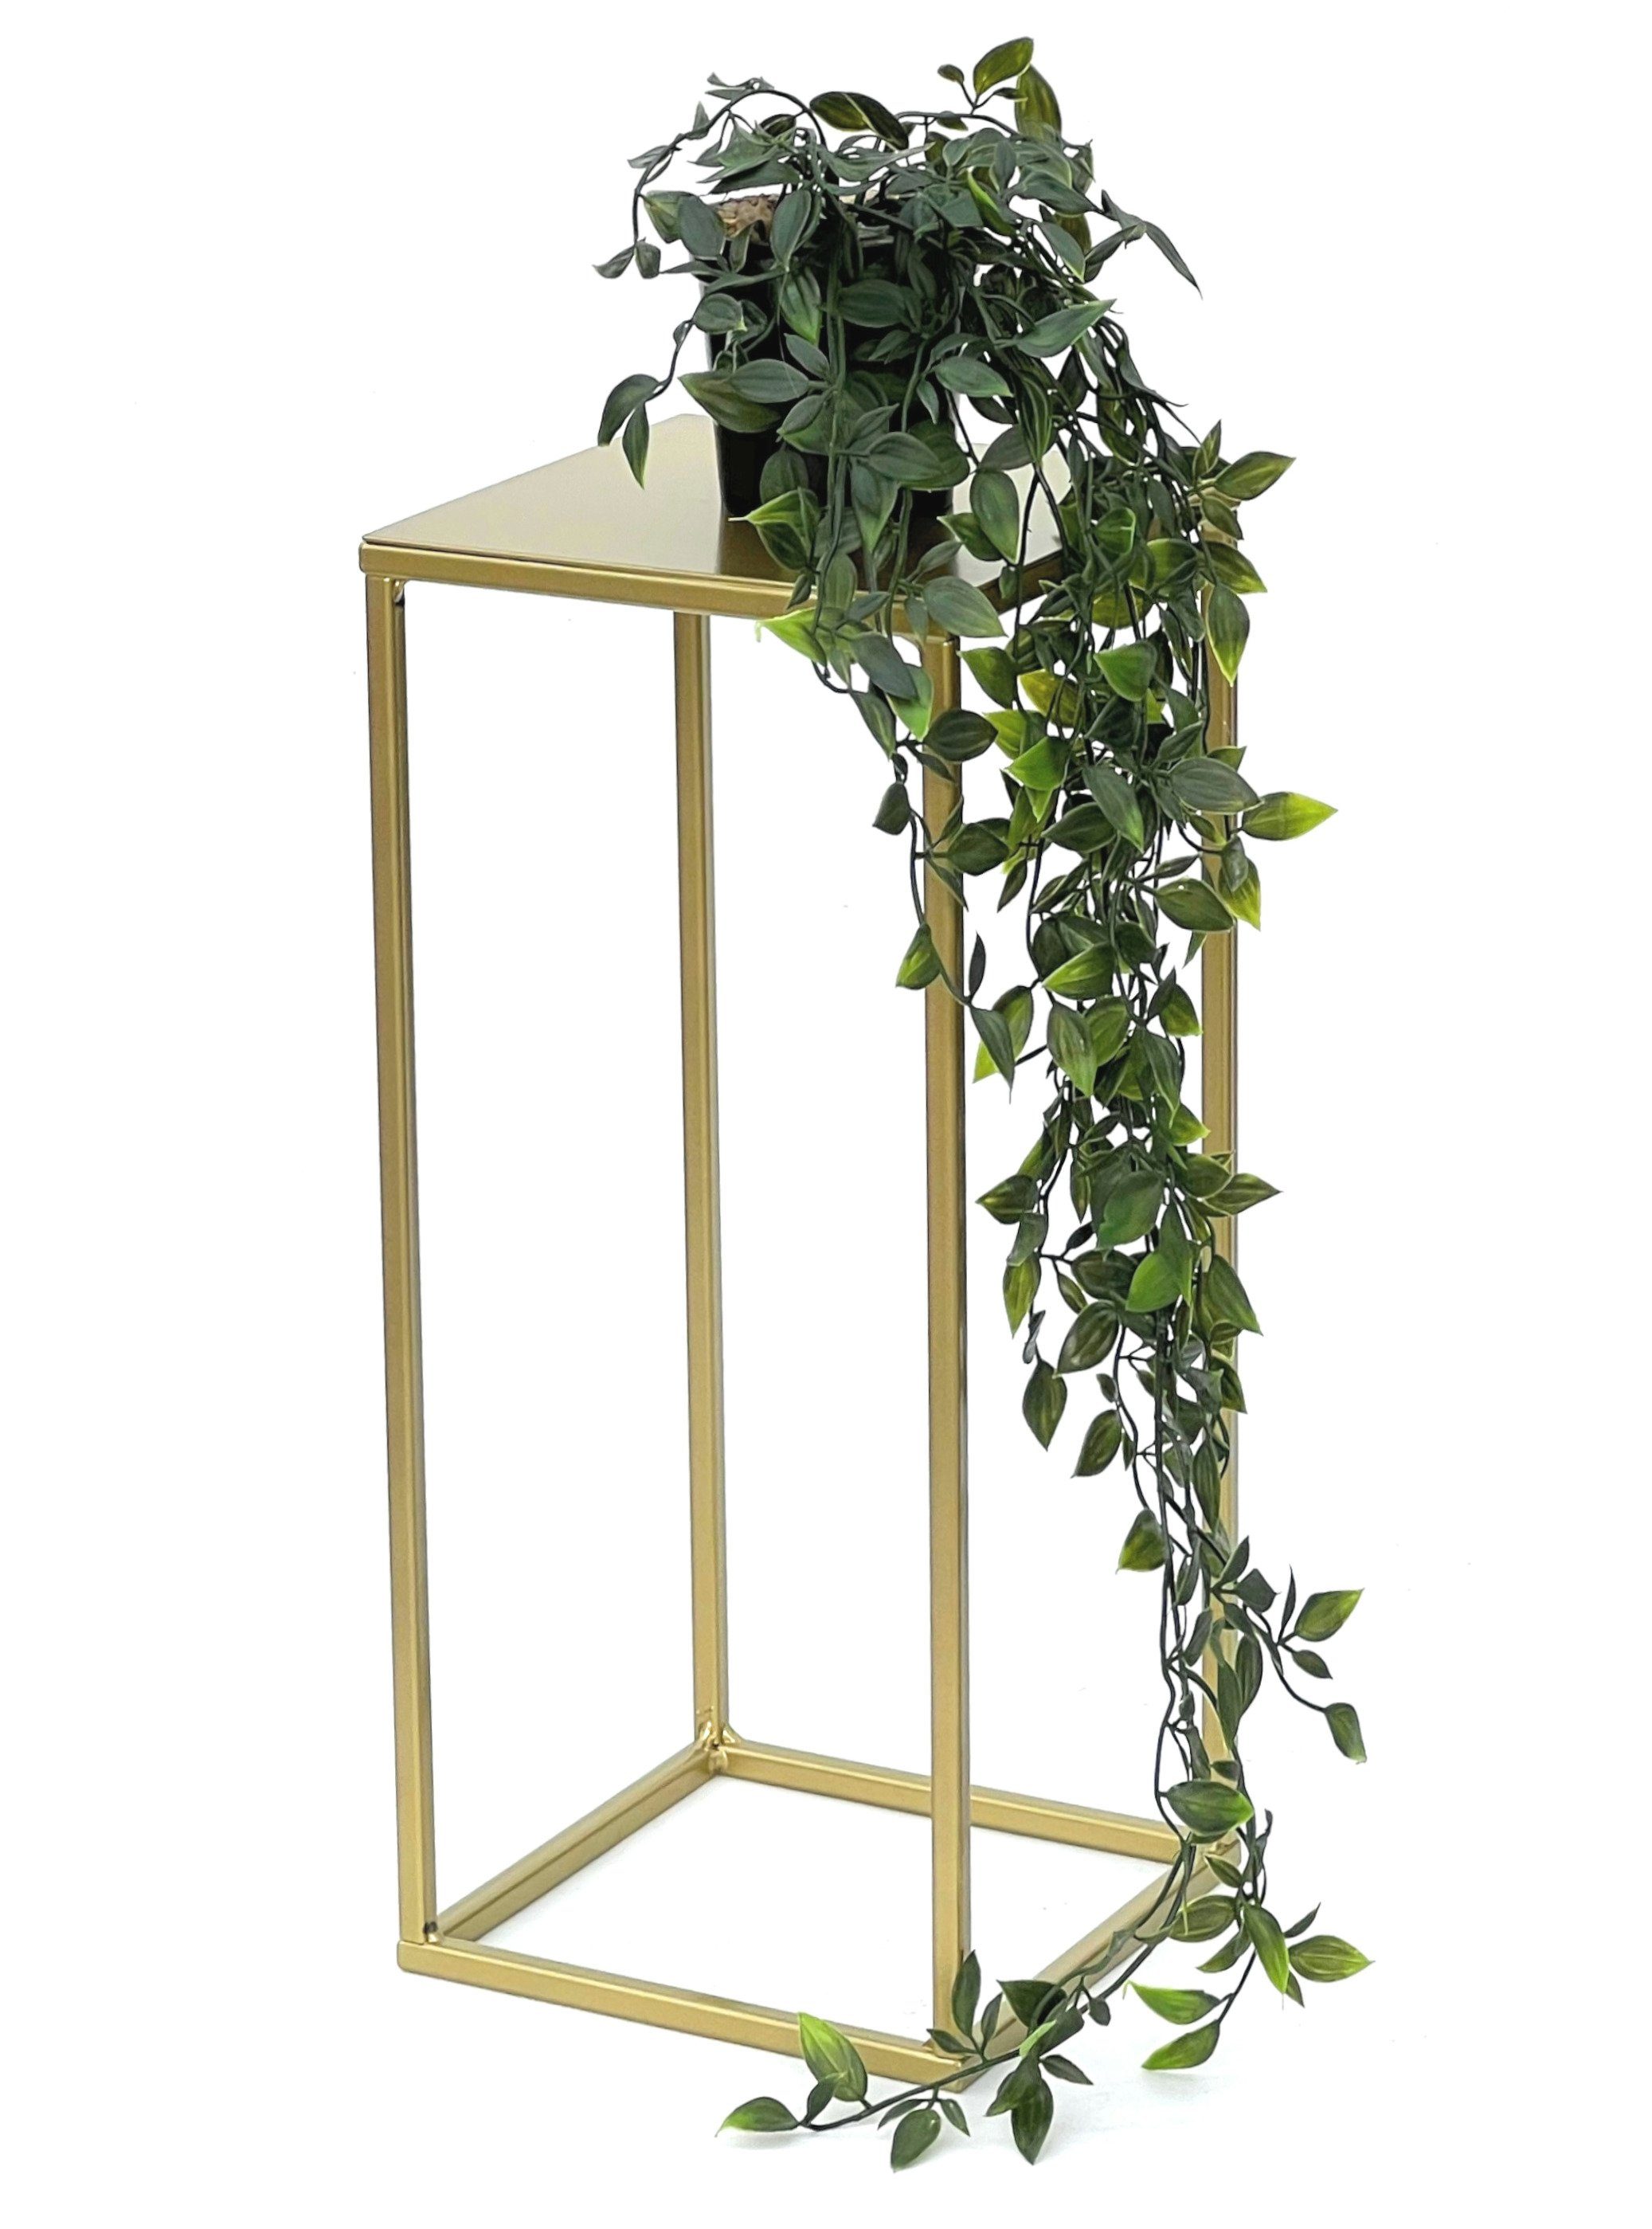 DanDiBo Blumenständer Blumenhocker Metall Gold Eckig 82-42 cm Blumenständer Beistelltisch | Blumenständer